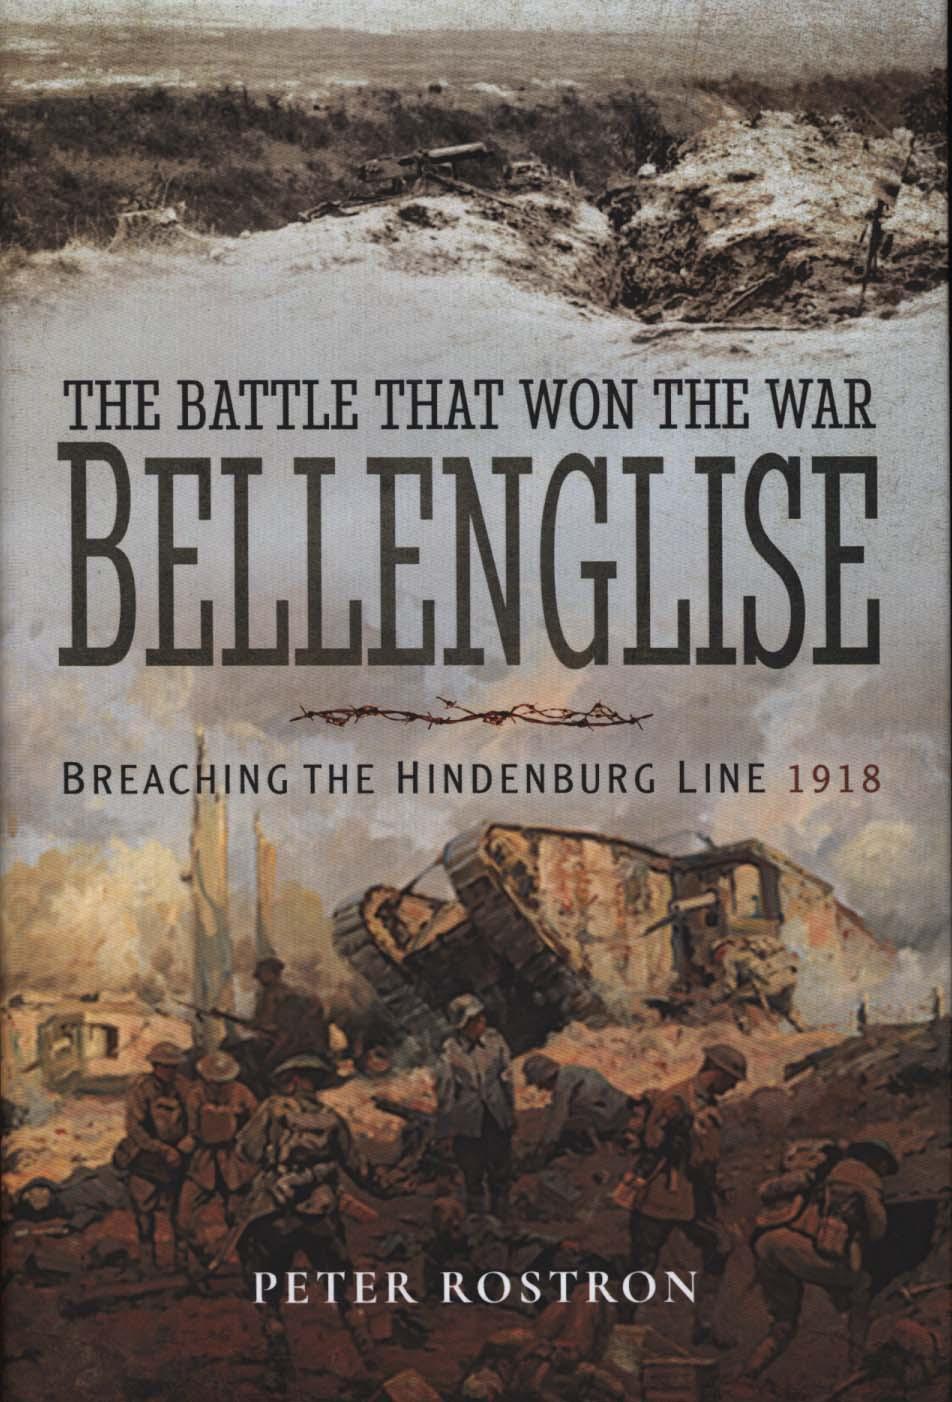 Battle That Won the War - Bellenglise